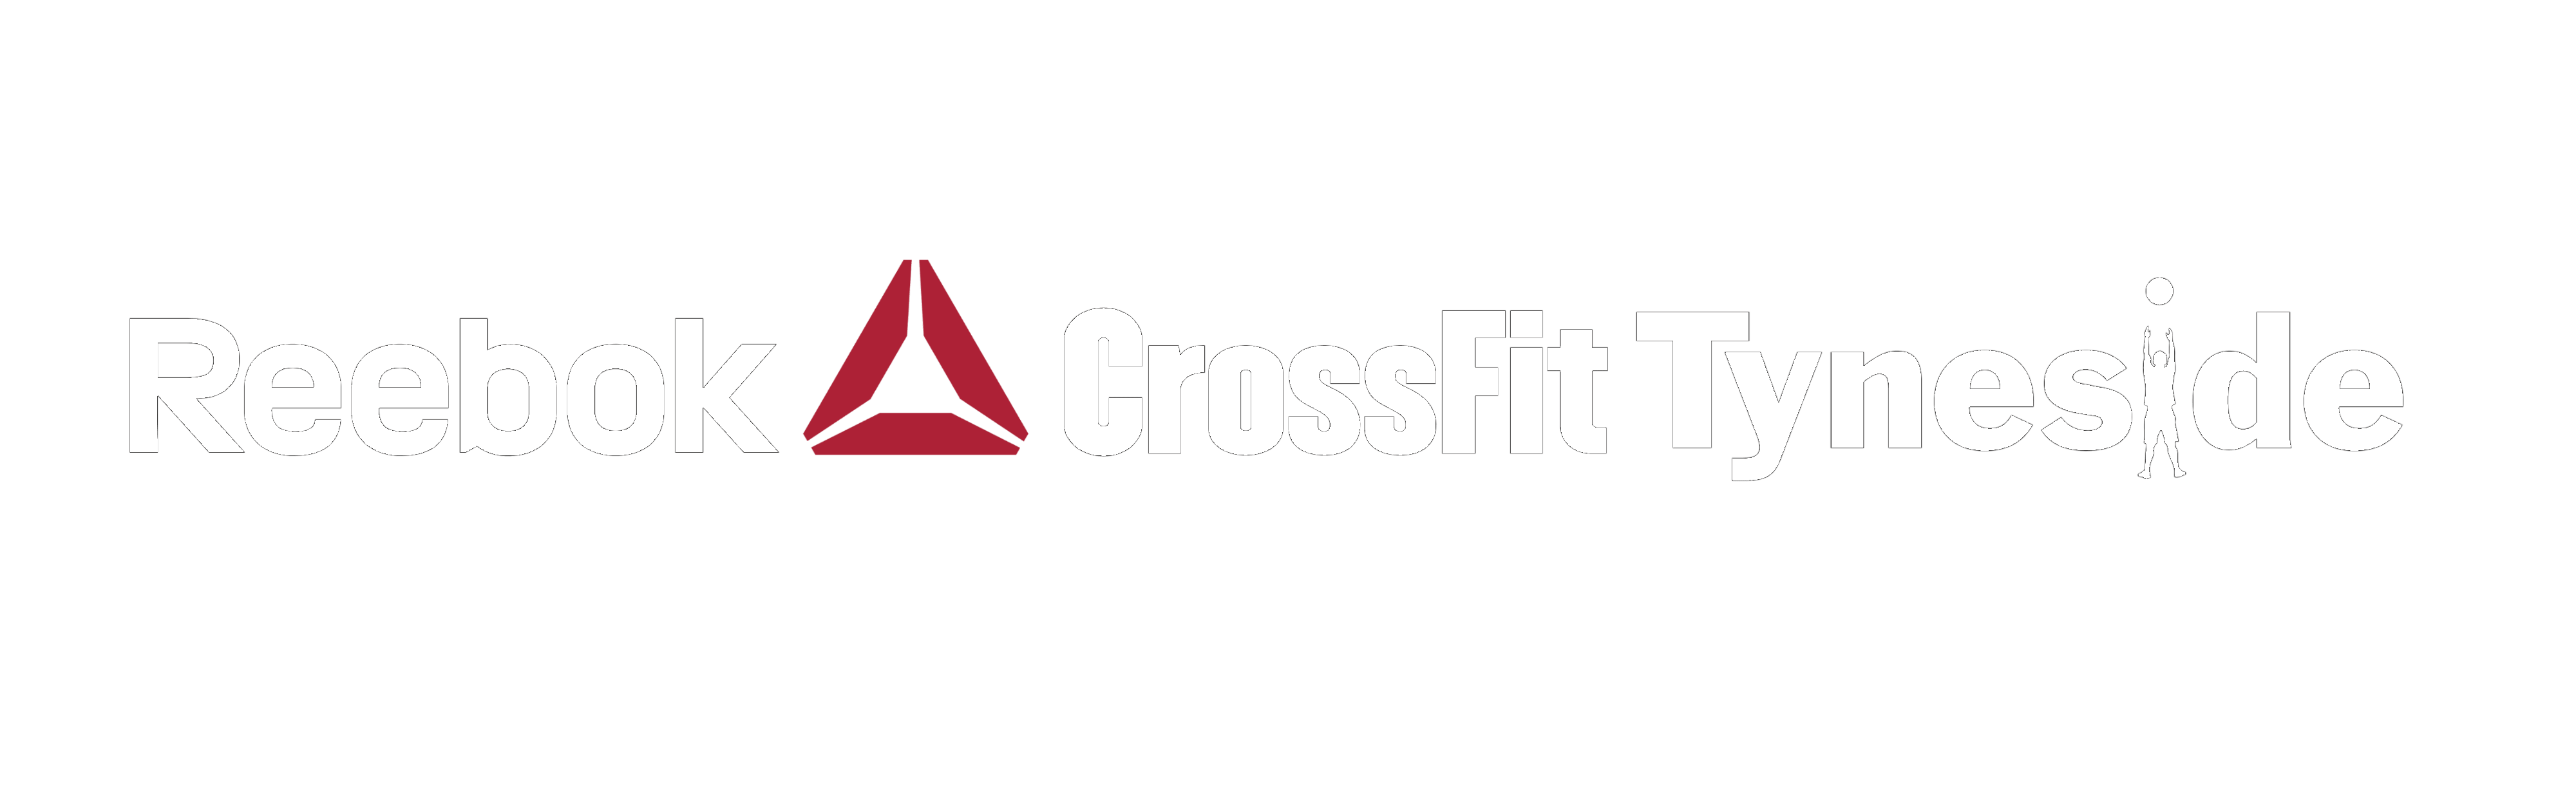 Reebok CrossFit Triangle Logo - Reebok CrossFit Tyneside. The Sport of Fitness